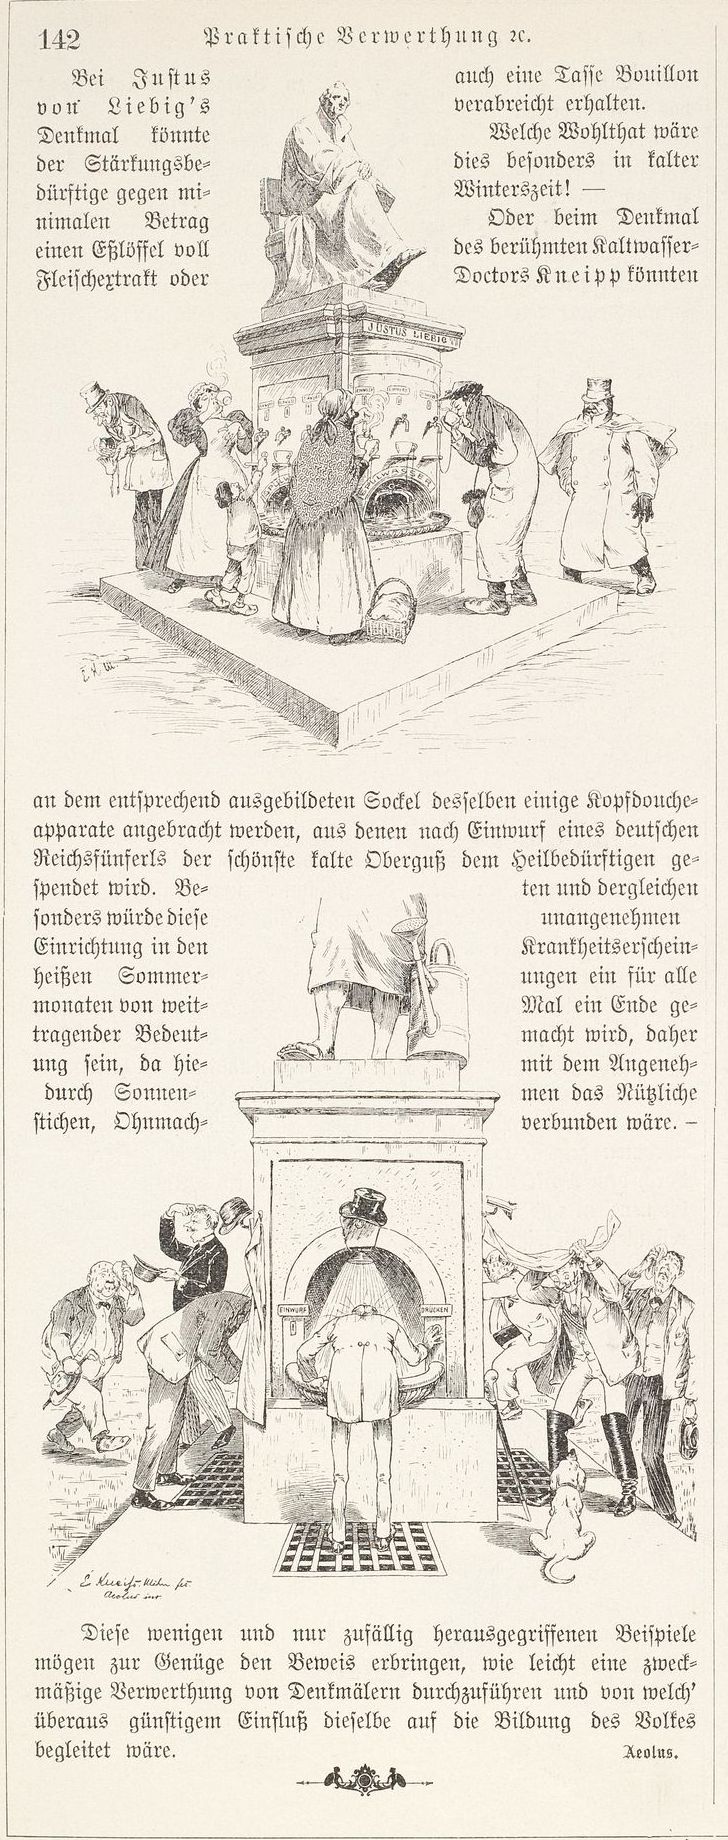 Alternative Verwendung der Denkmäler für Justus v. Liebig und Pfarrer Kneipp